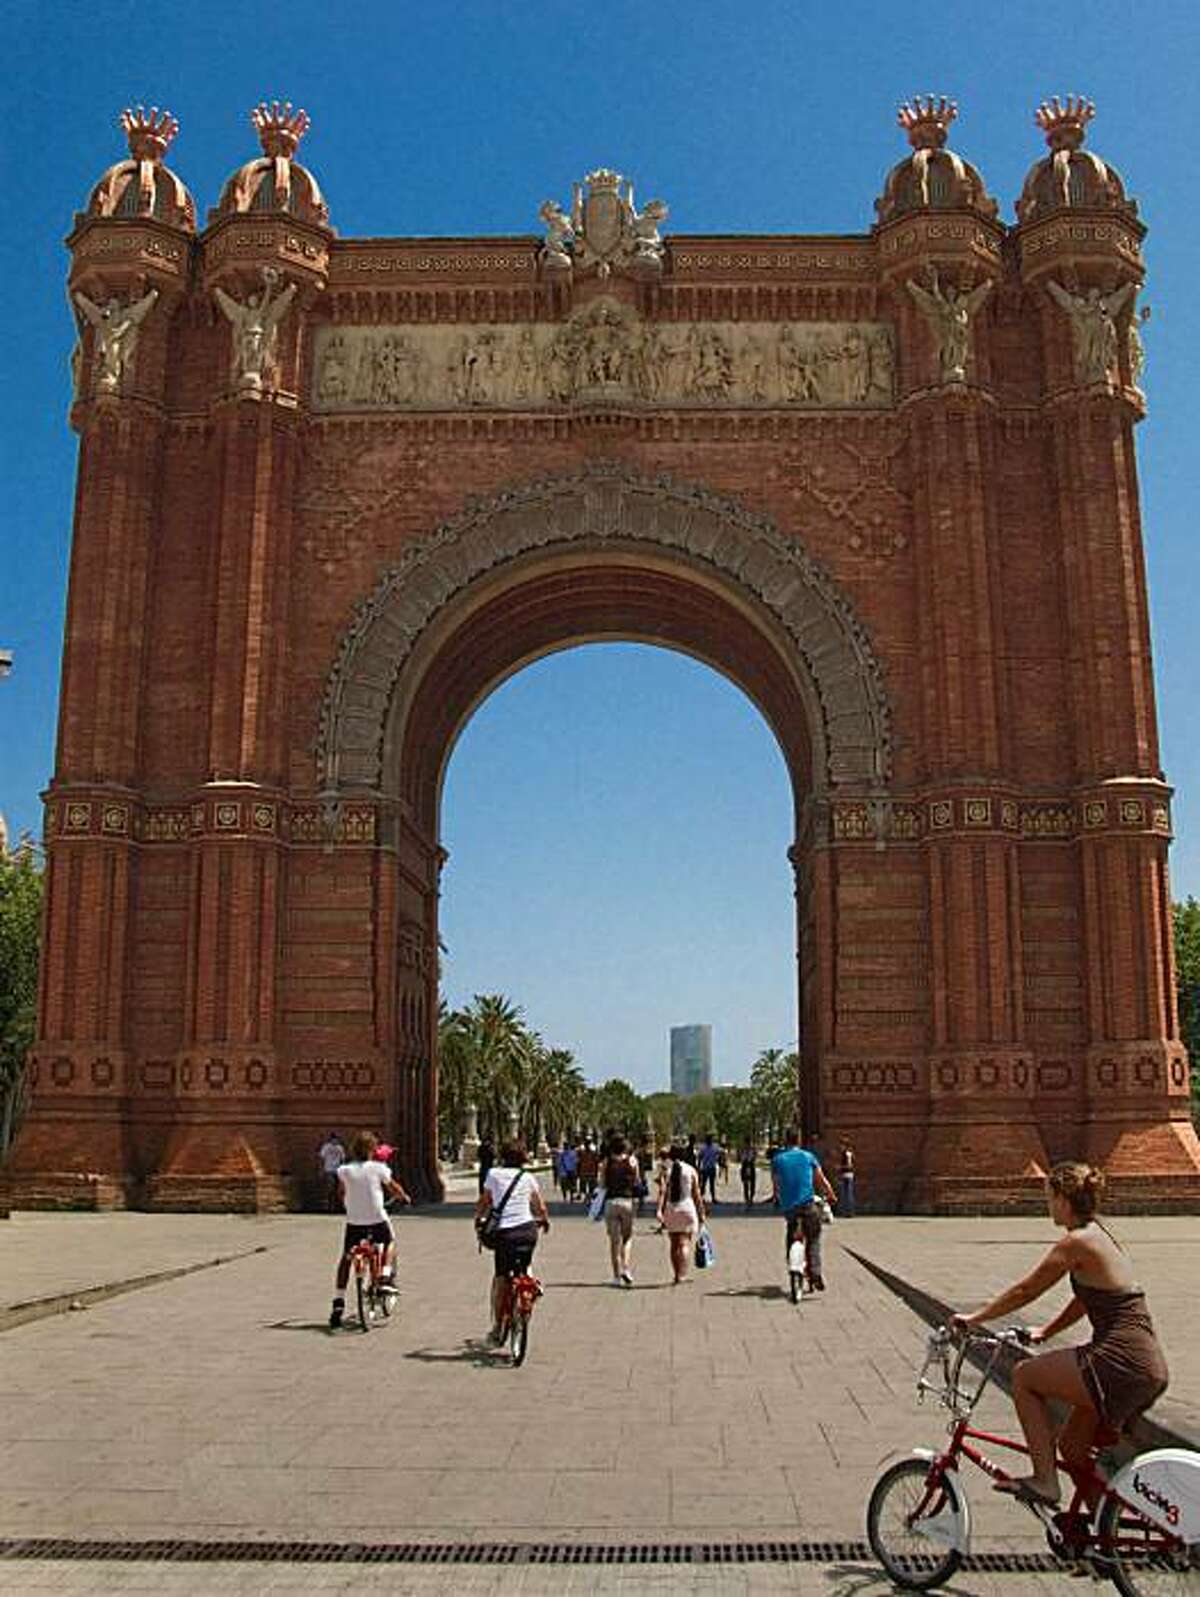 Arc de Triomphe at the entrance to Parc de la Cuitadella in Barcelona, Spain.